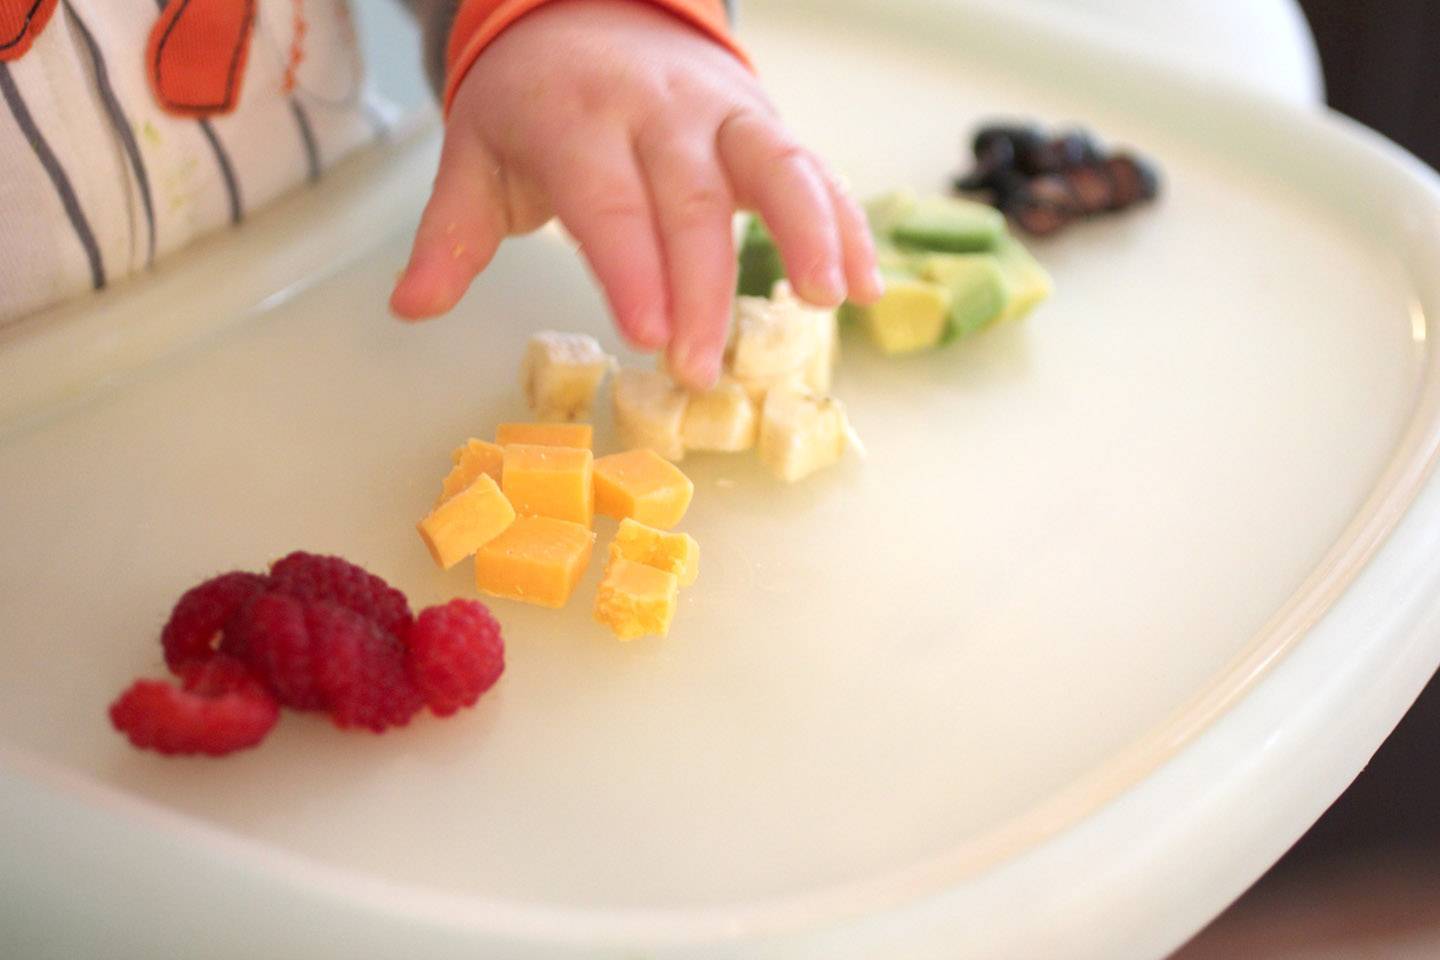 Чем кормить ребенка после рвоты? диета и режим питания